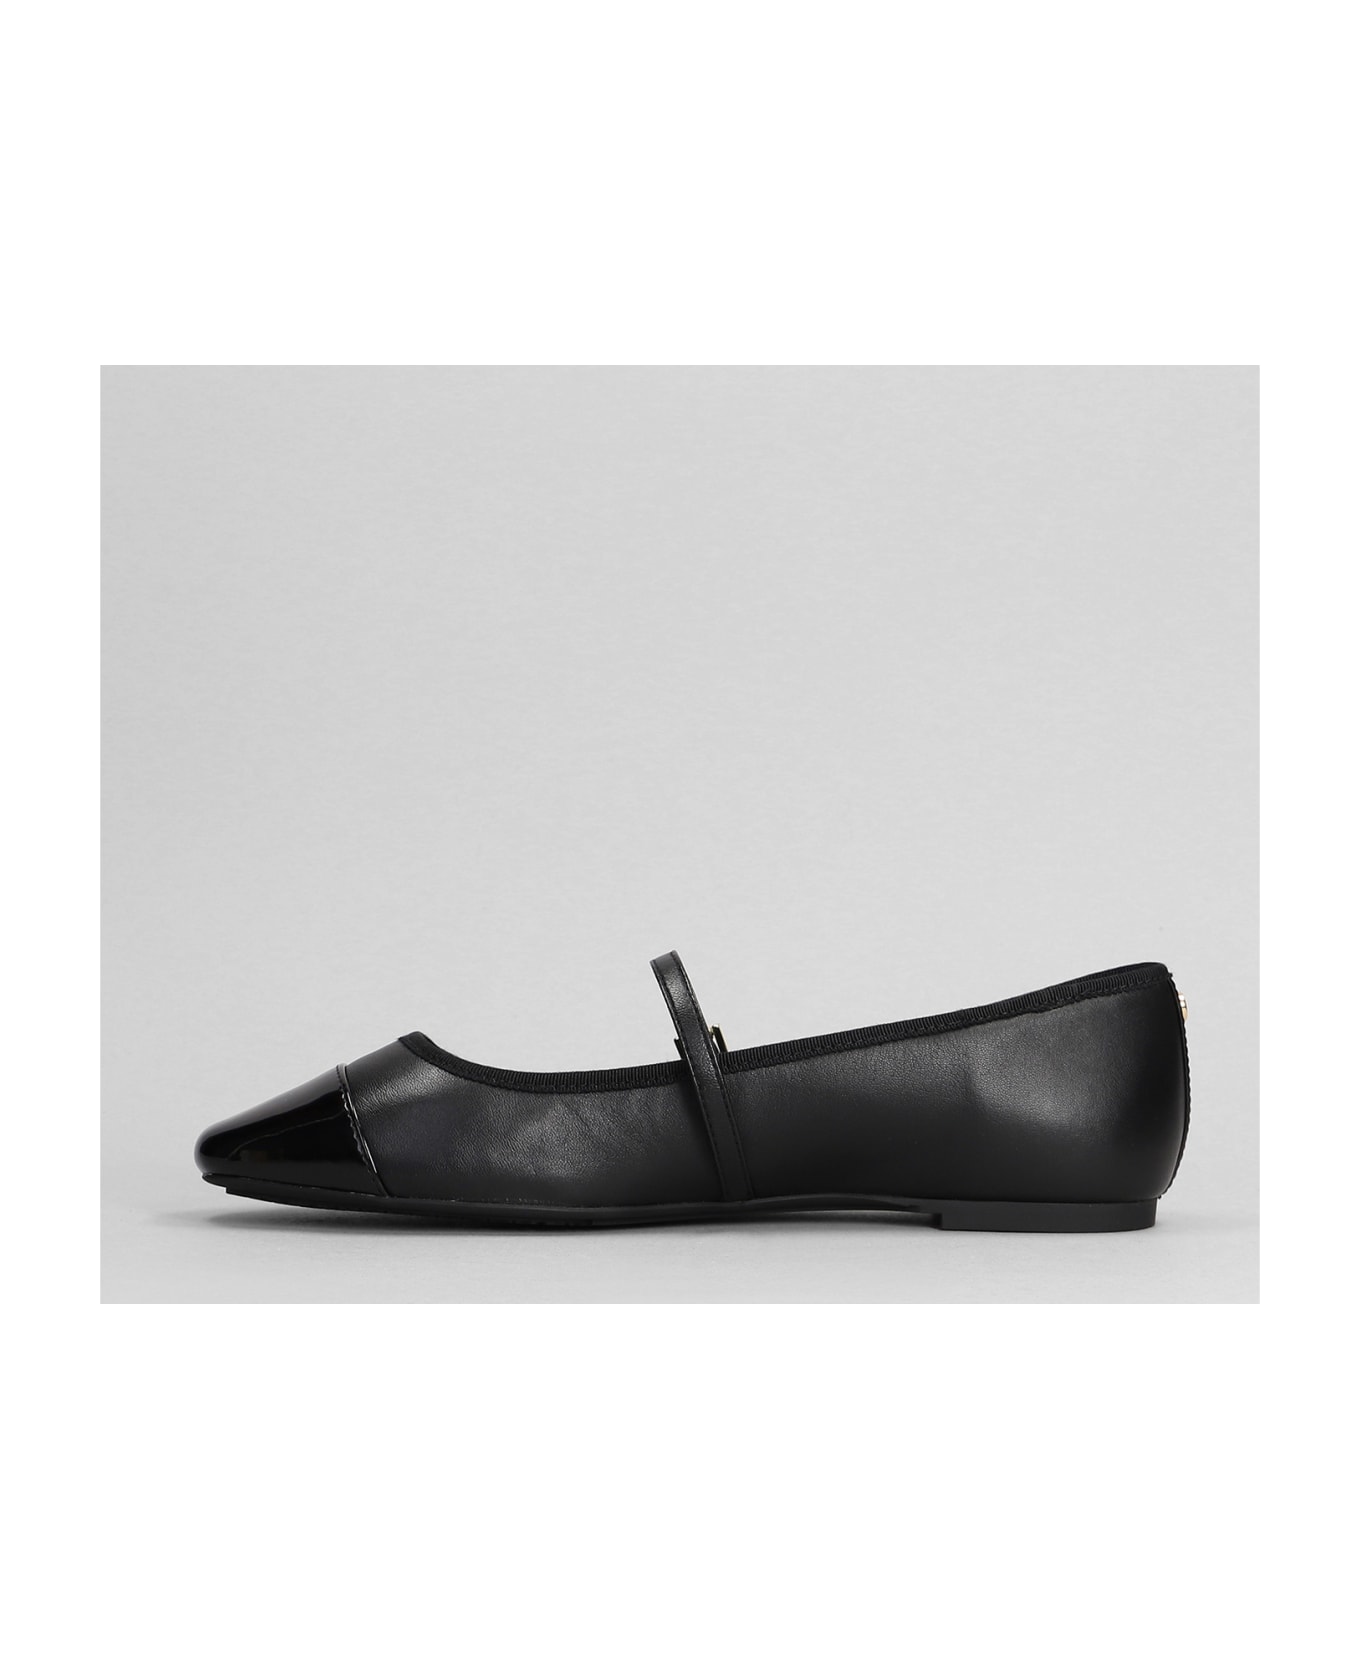 Michael Kors Mae Flex Ballet waterproof In Black Leather - black